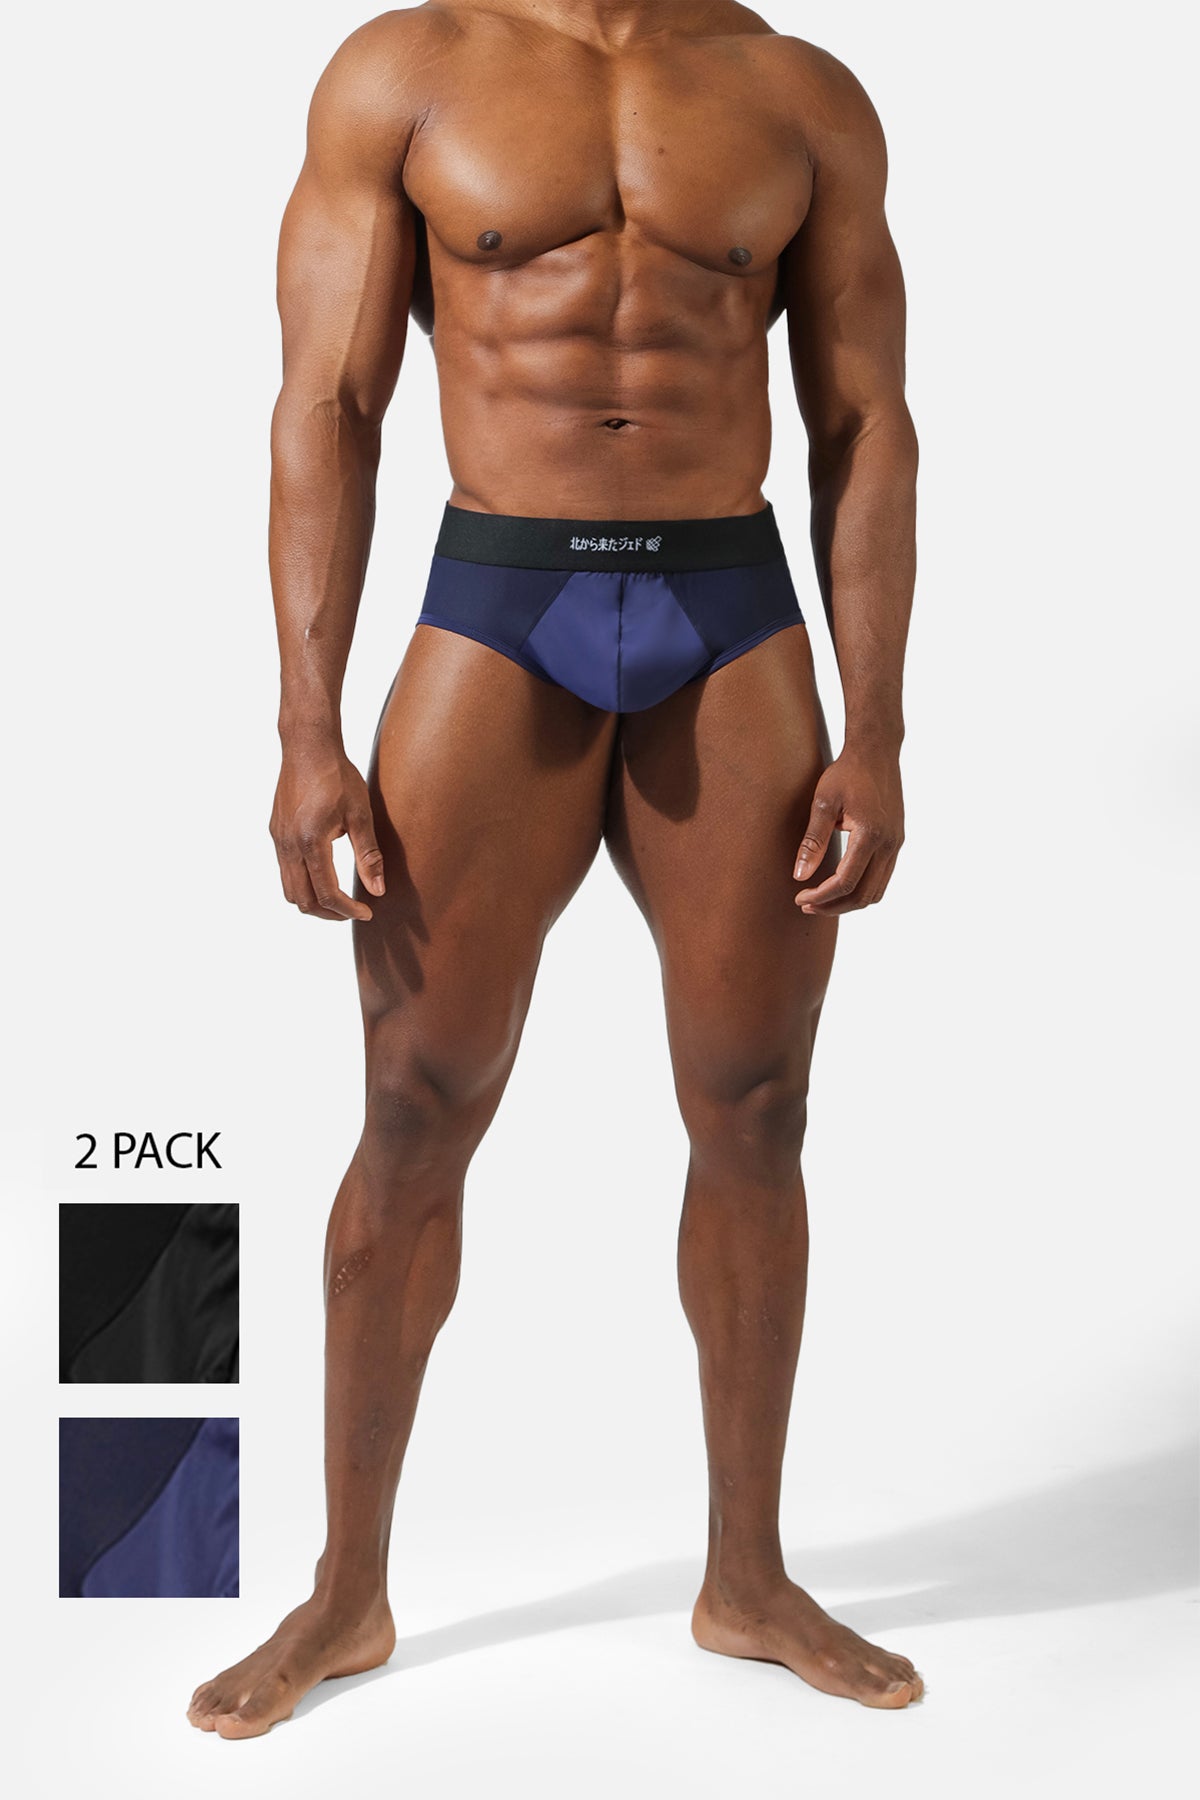 men's underwear pack